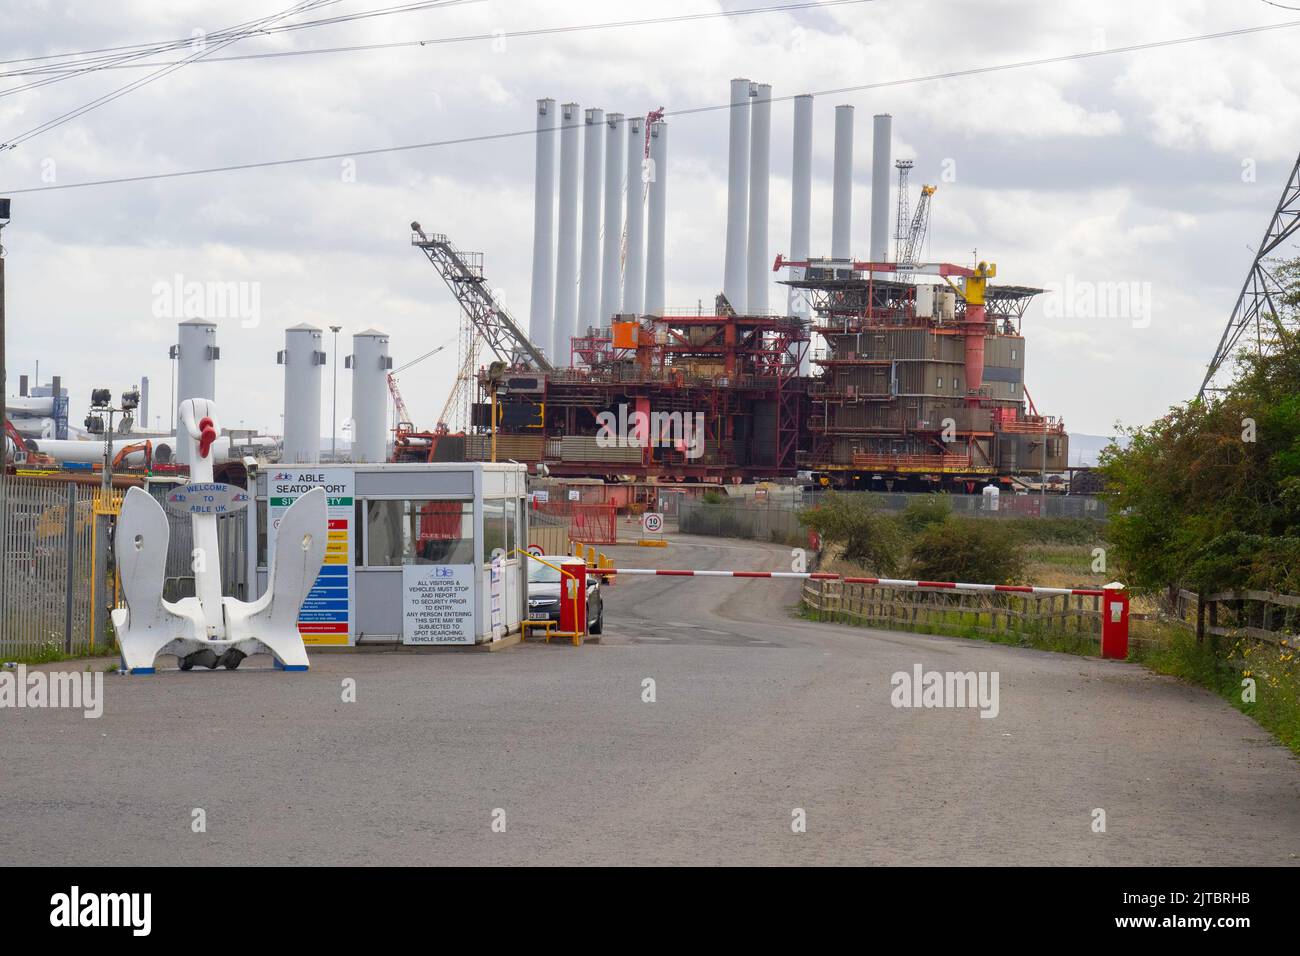 Terrasse supérieure d'une plate-forme de production de pétrole et de gaz offshore pendant le recyclage dans l'usine britannique de Seaton Carew Banque D'Images